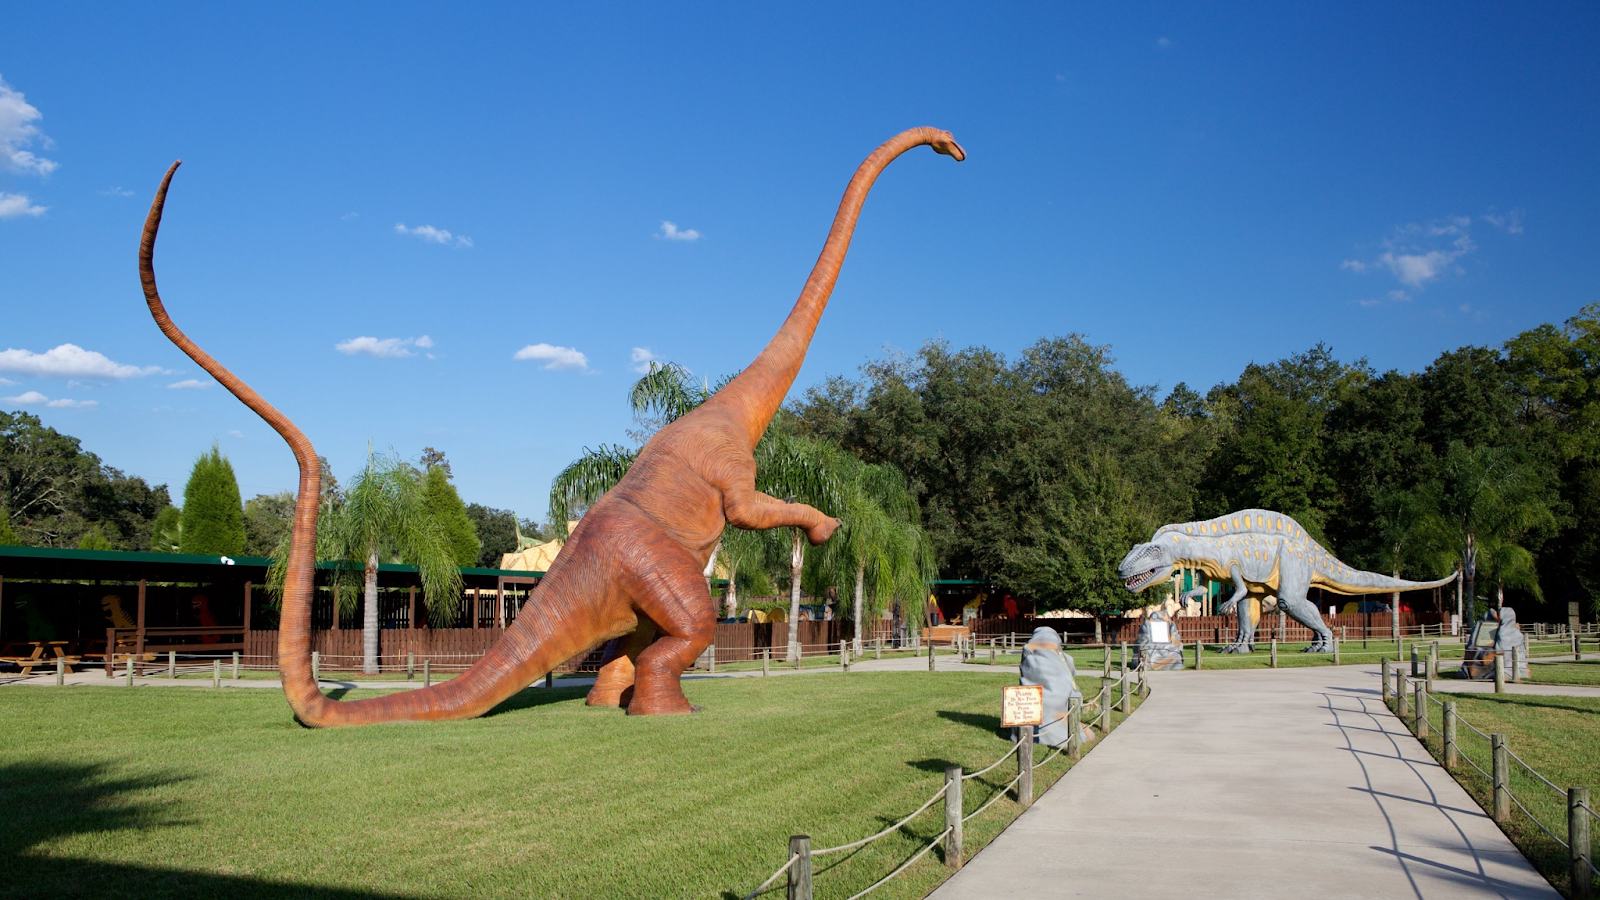 Florida's Dinosaur World Plant City Orlando - Things to Know